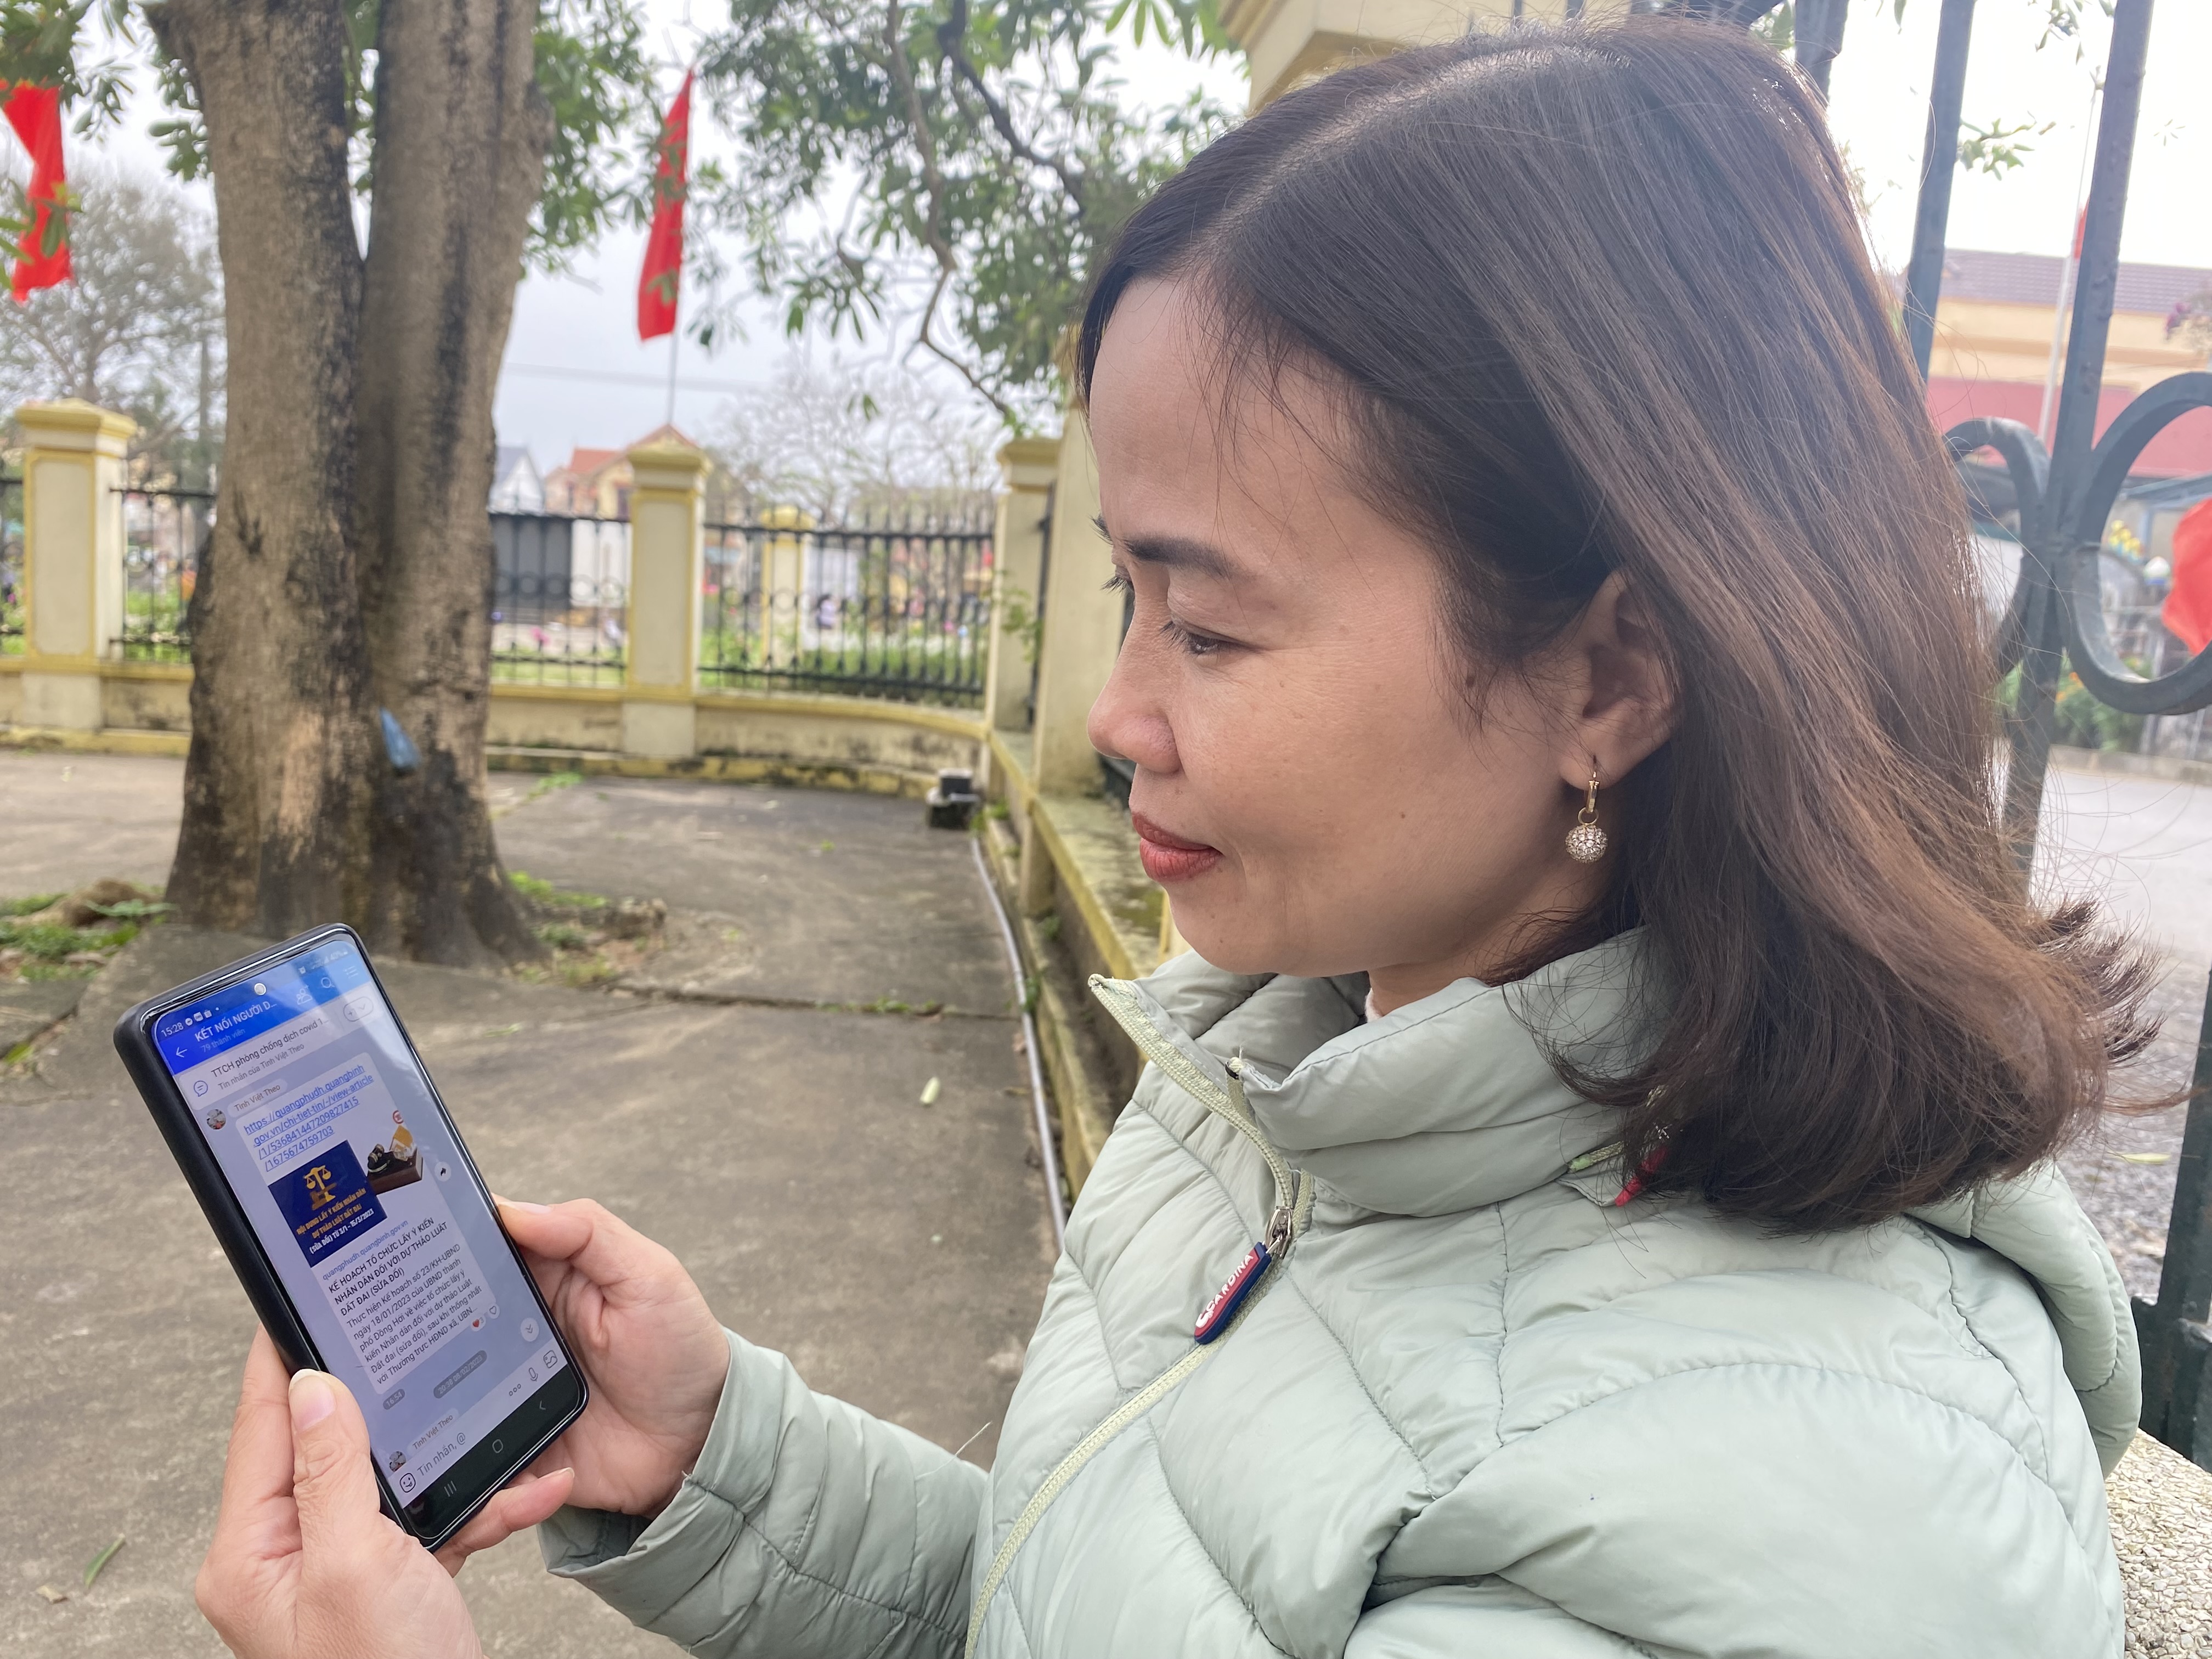 Chị Đinh Thị Tuyết Thu (thôn Nam Phú, xã Quang Phú) hài lòng khi được cập nhật nhanh chóng, chính xác thông tin từ nhóm “Zalo kết nối người dân”.